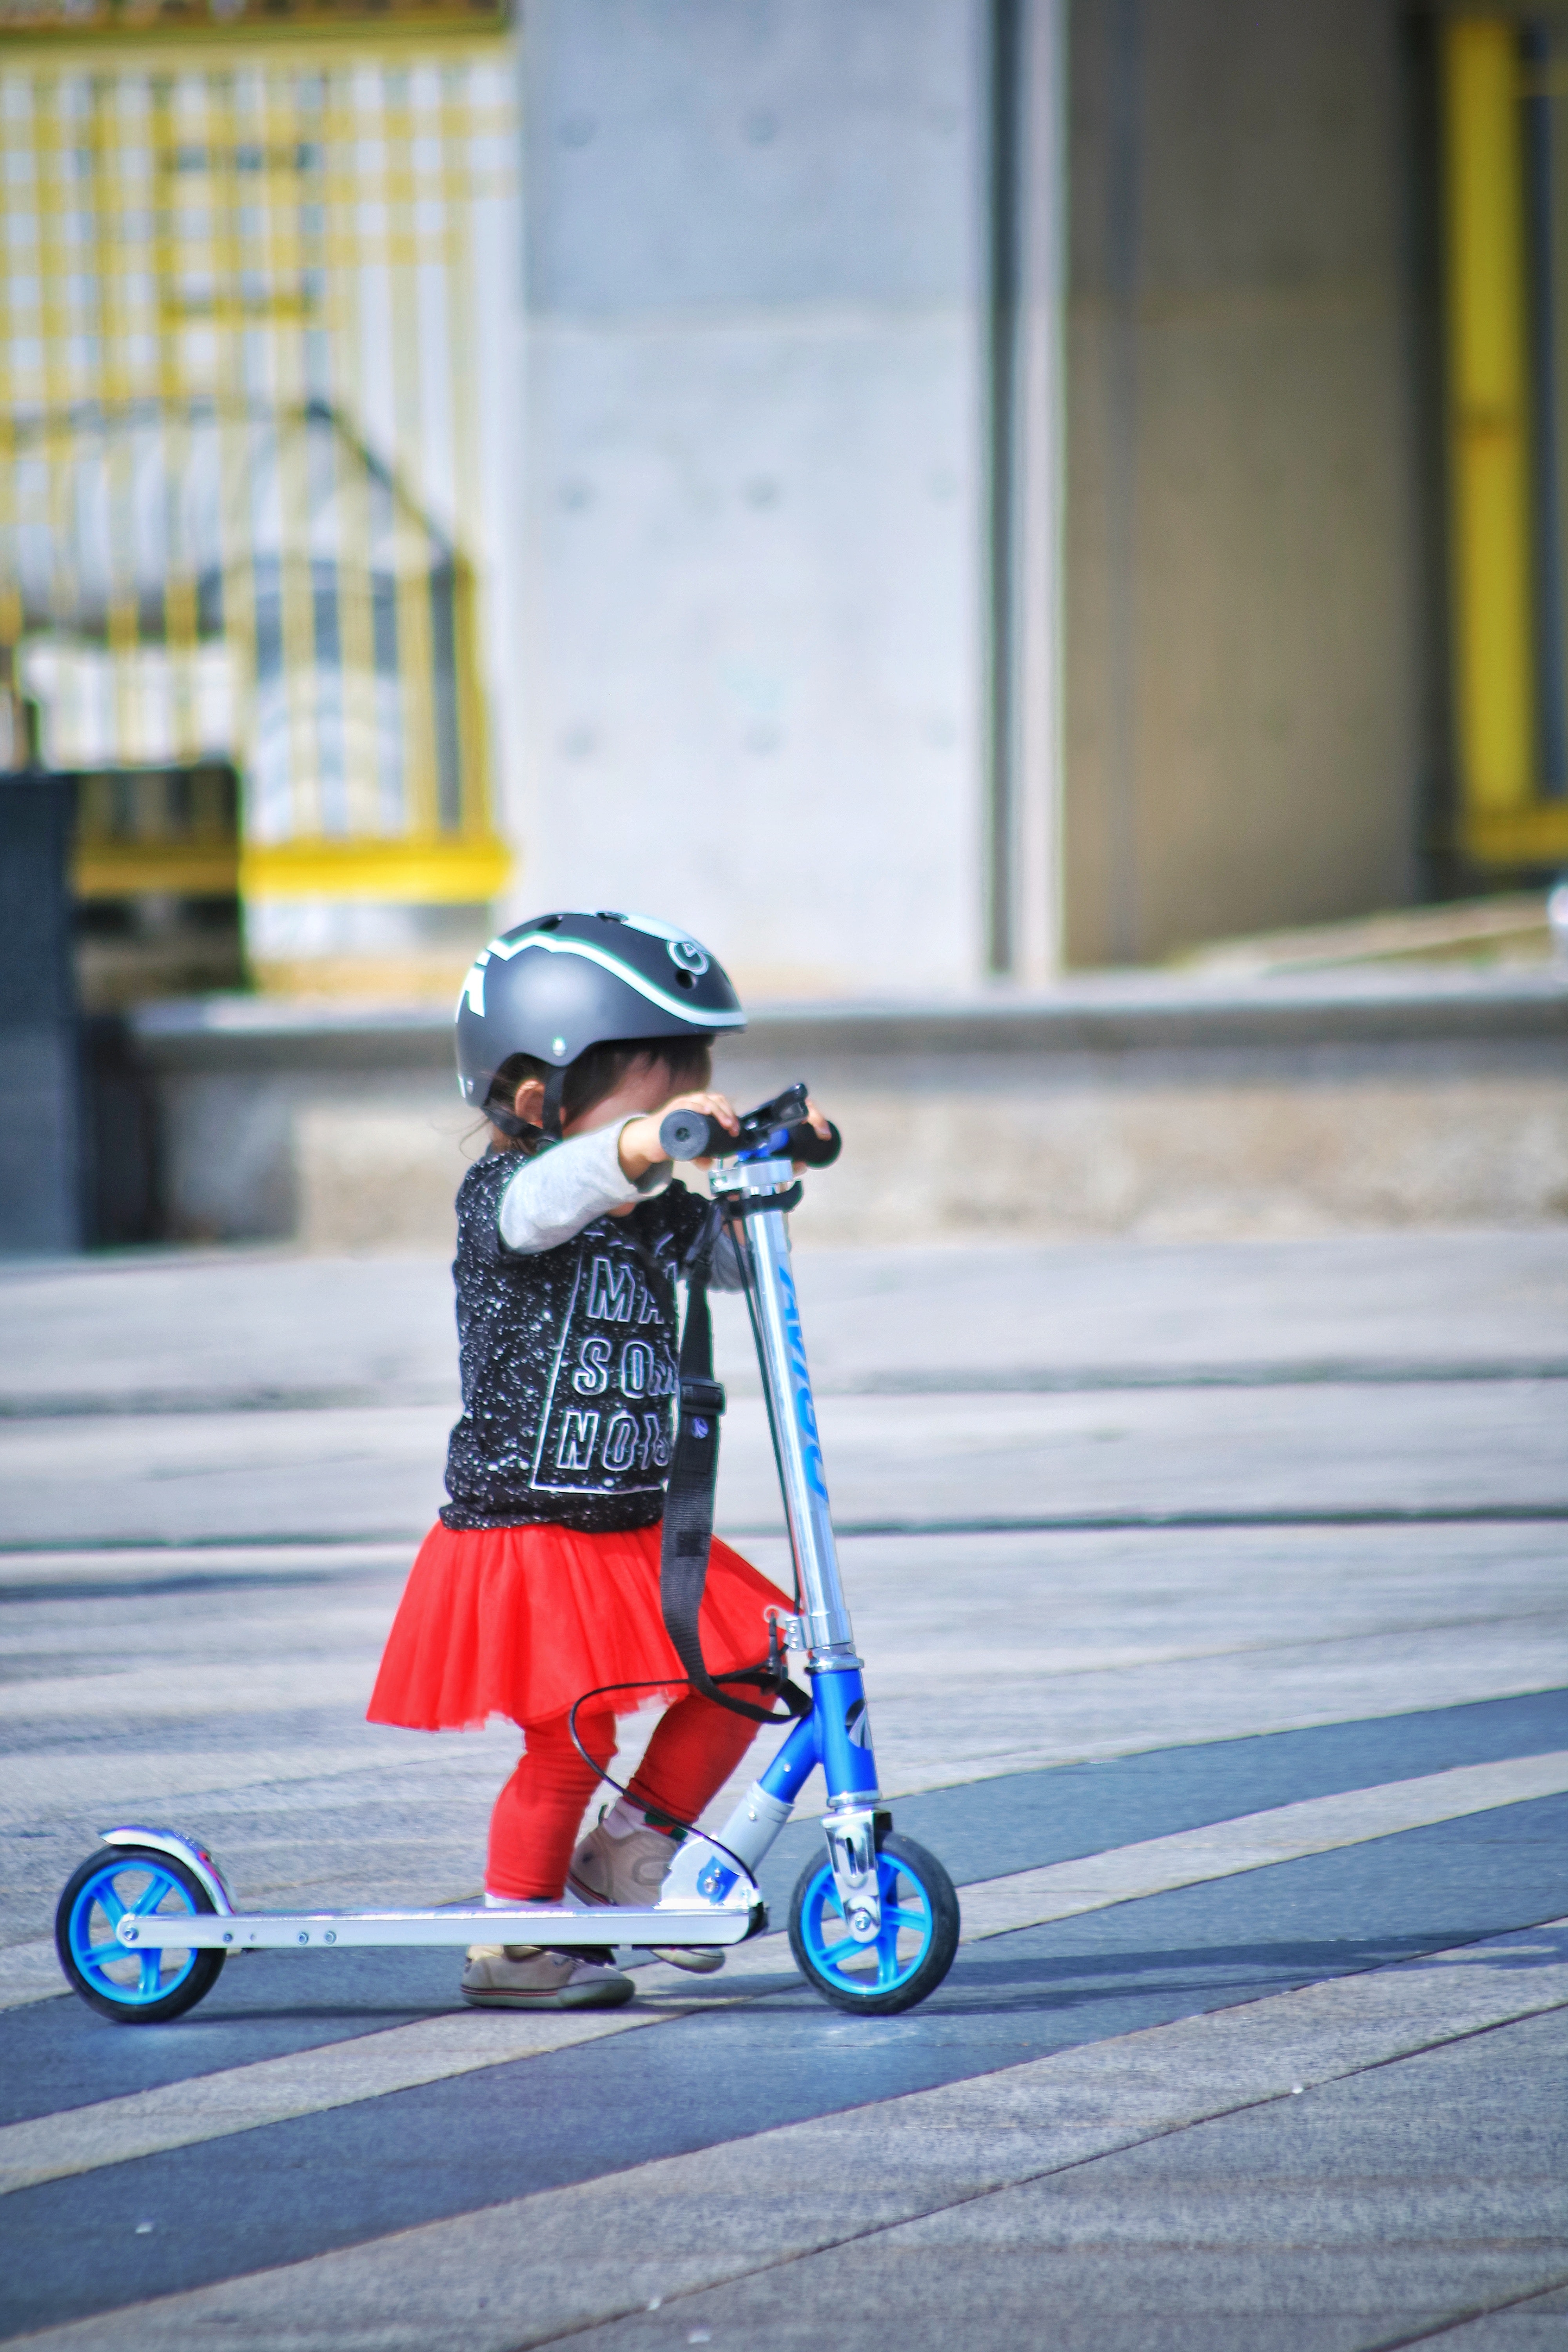 La imagen muestra una niña pequeña con un patinete.